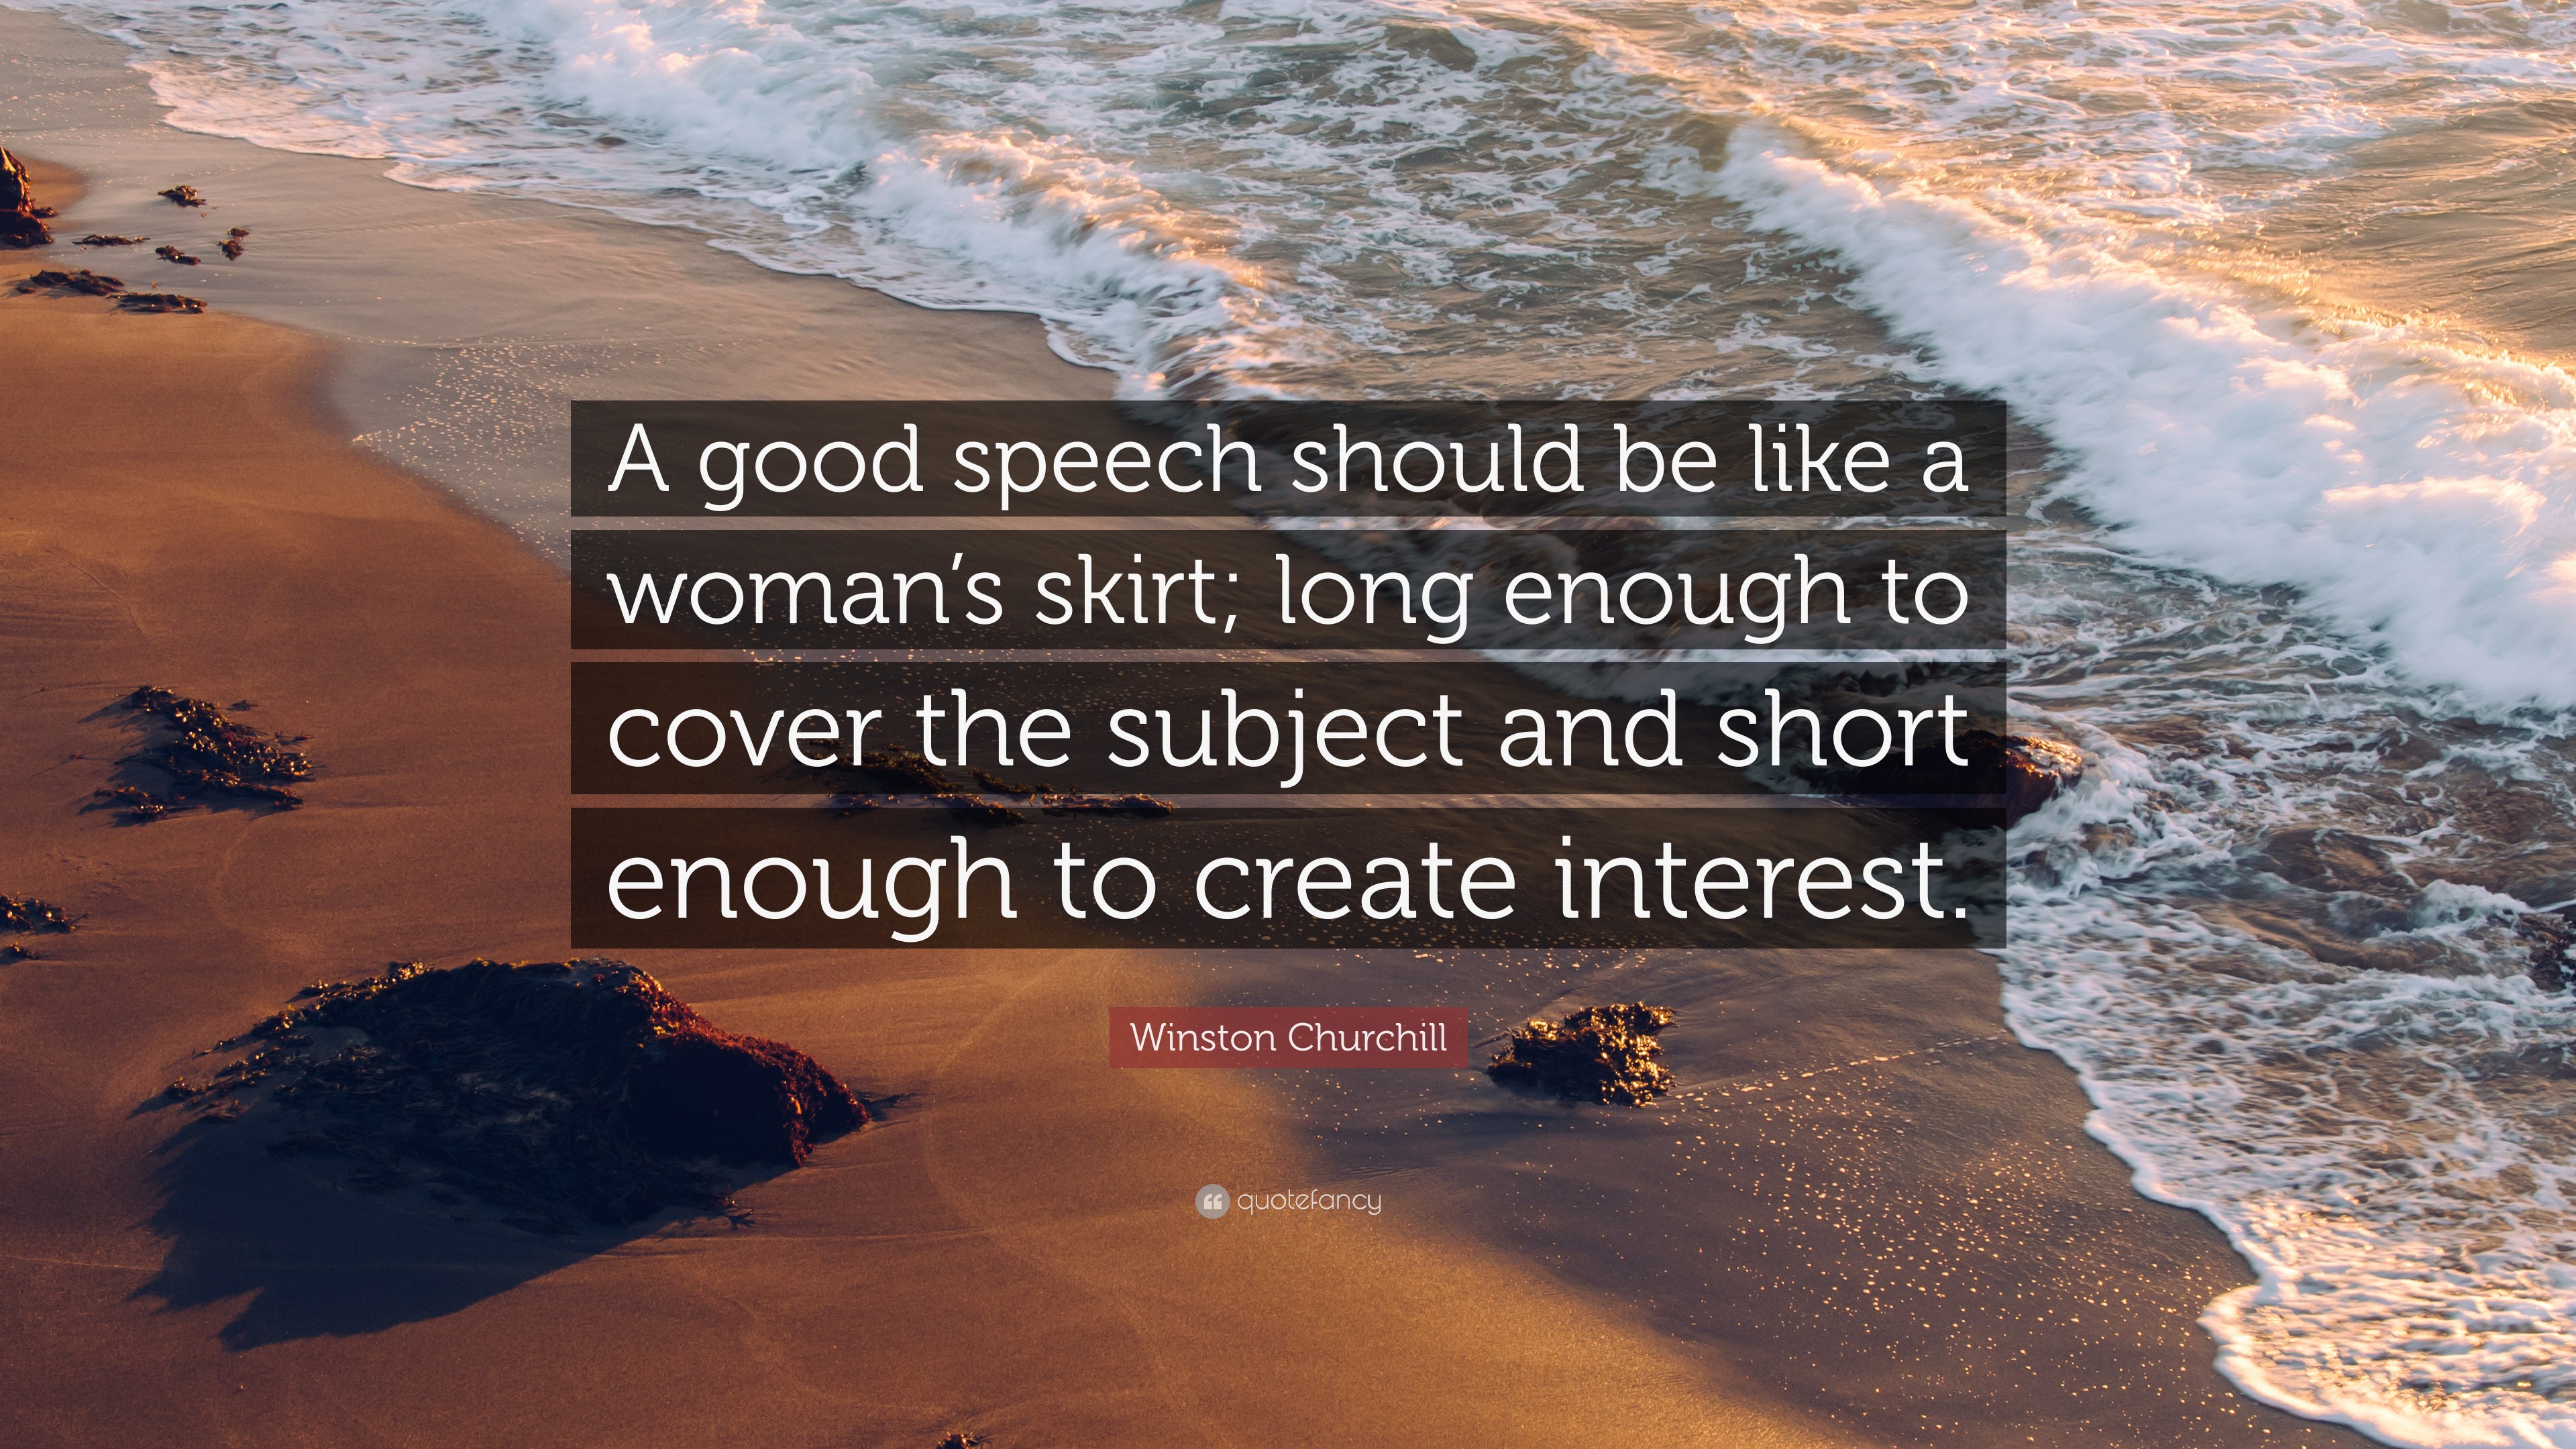 good speech should be like a woman's skirt